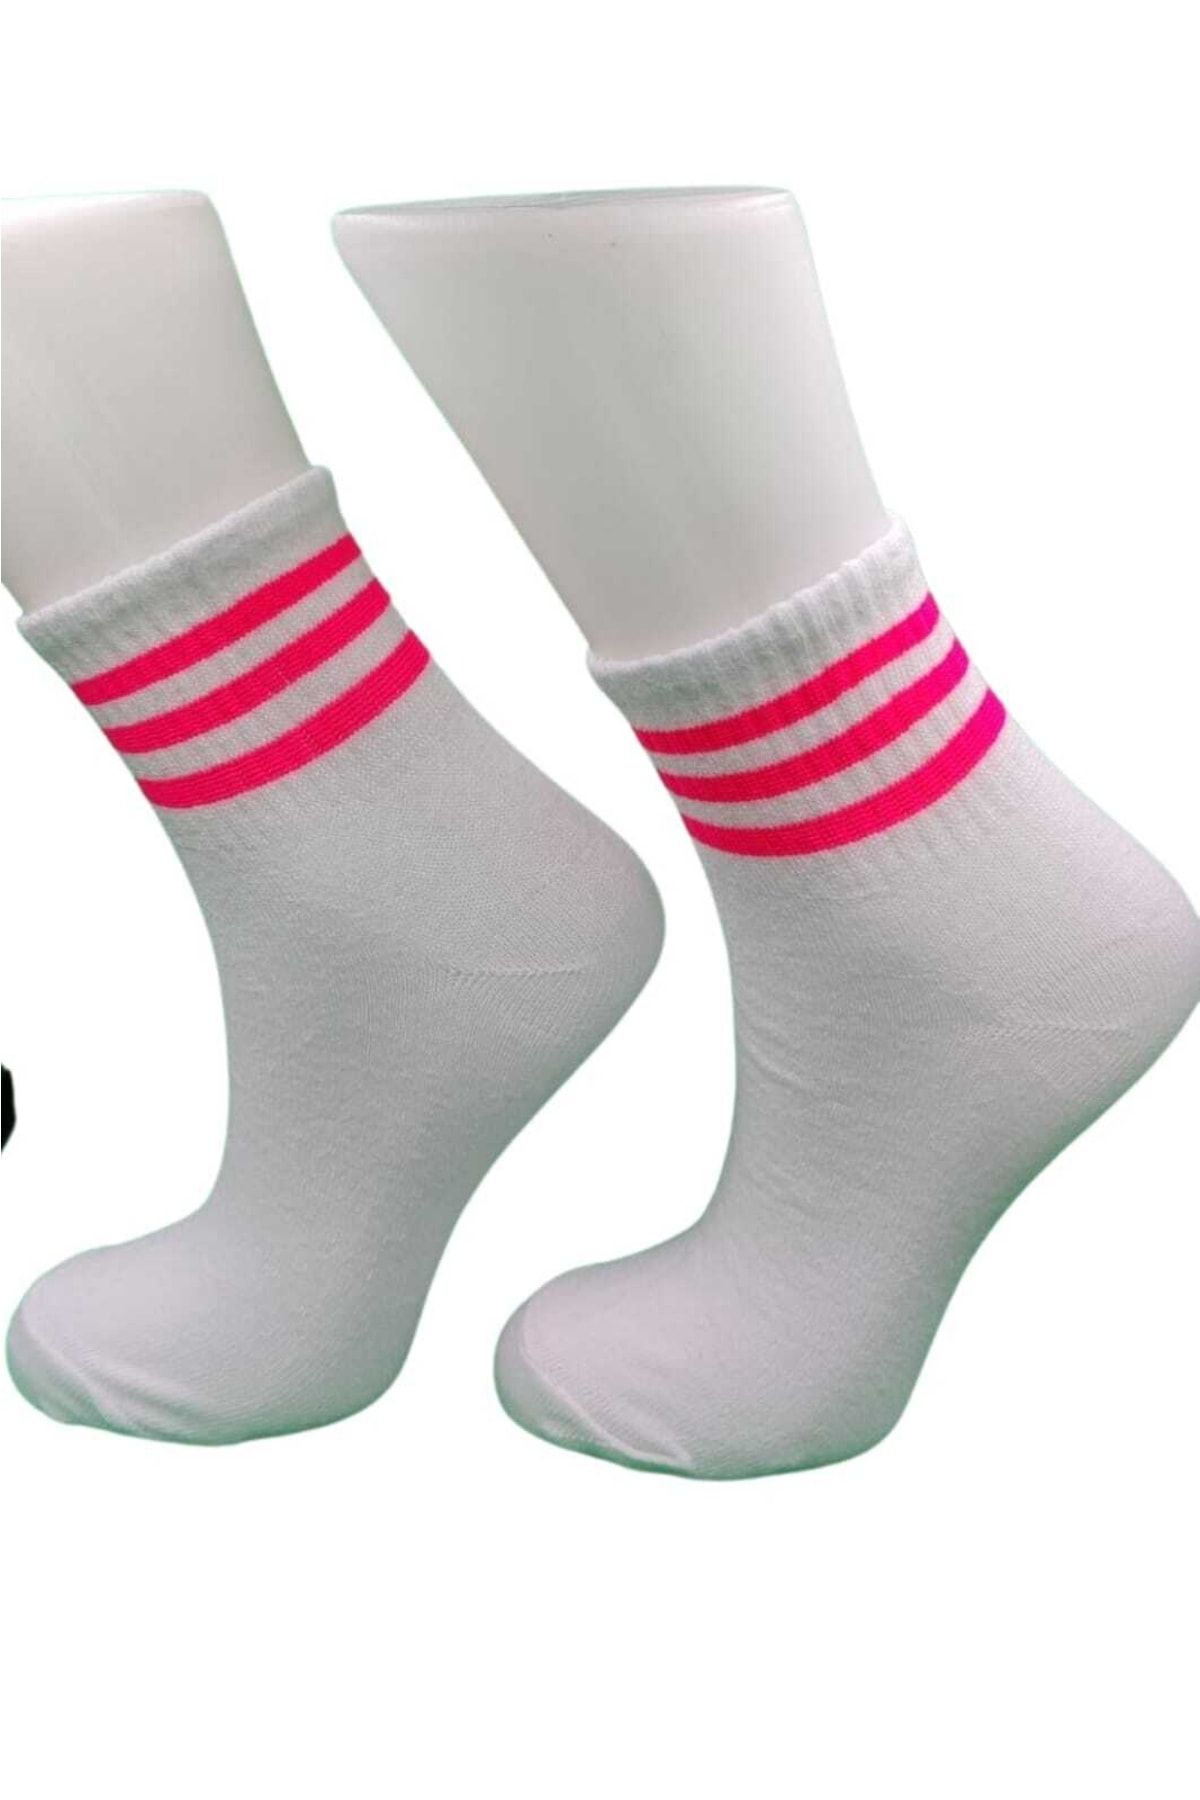 pazariz Patik Çorap Beyaz Çizgili 12 Adet